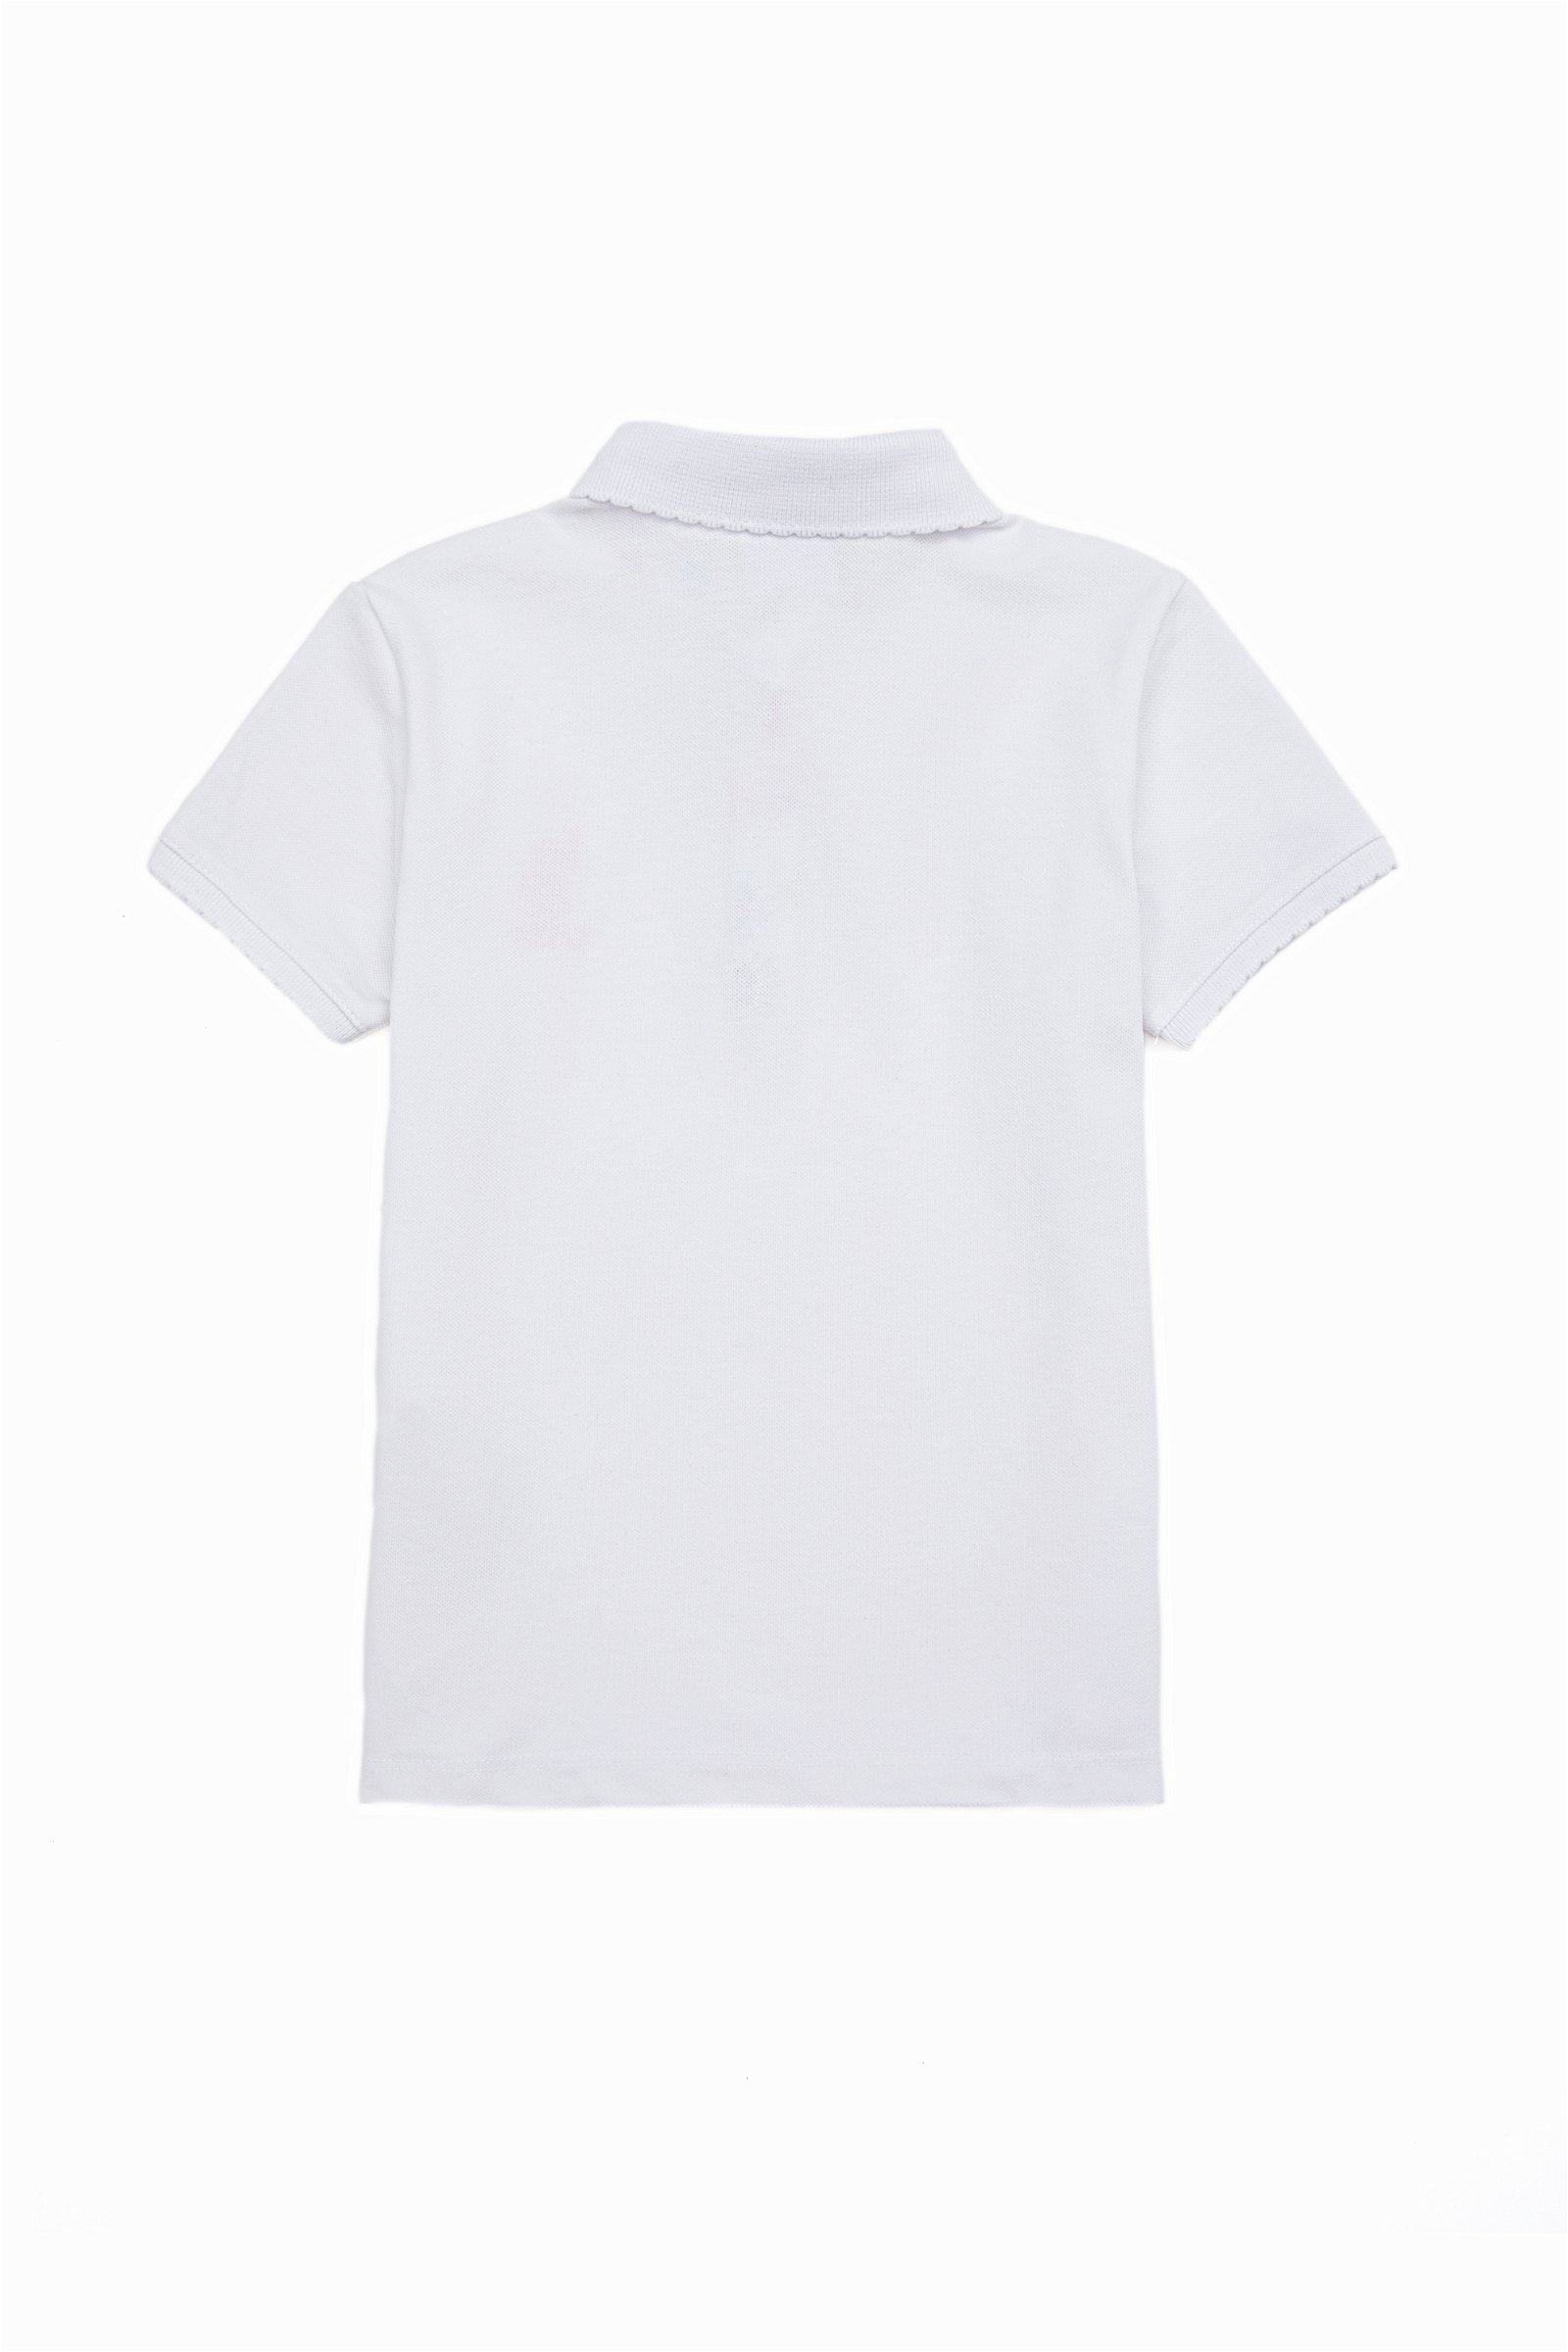 تی شرت  سفید  استاندارد فیت  دخترانه یو اس پولو